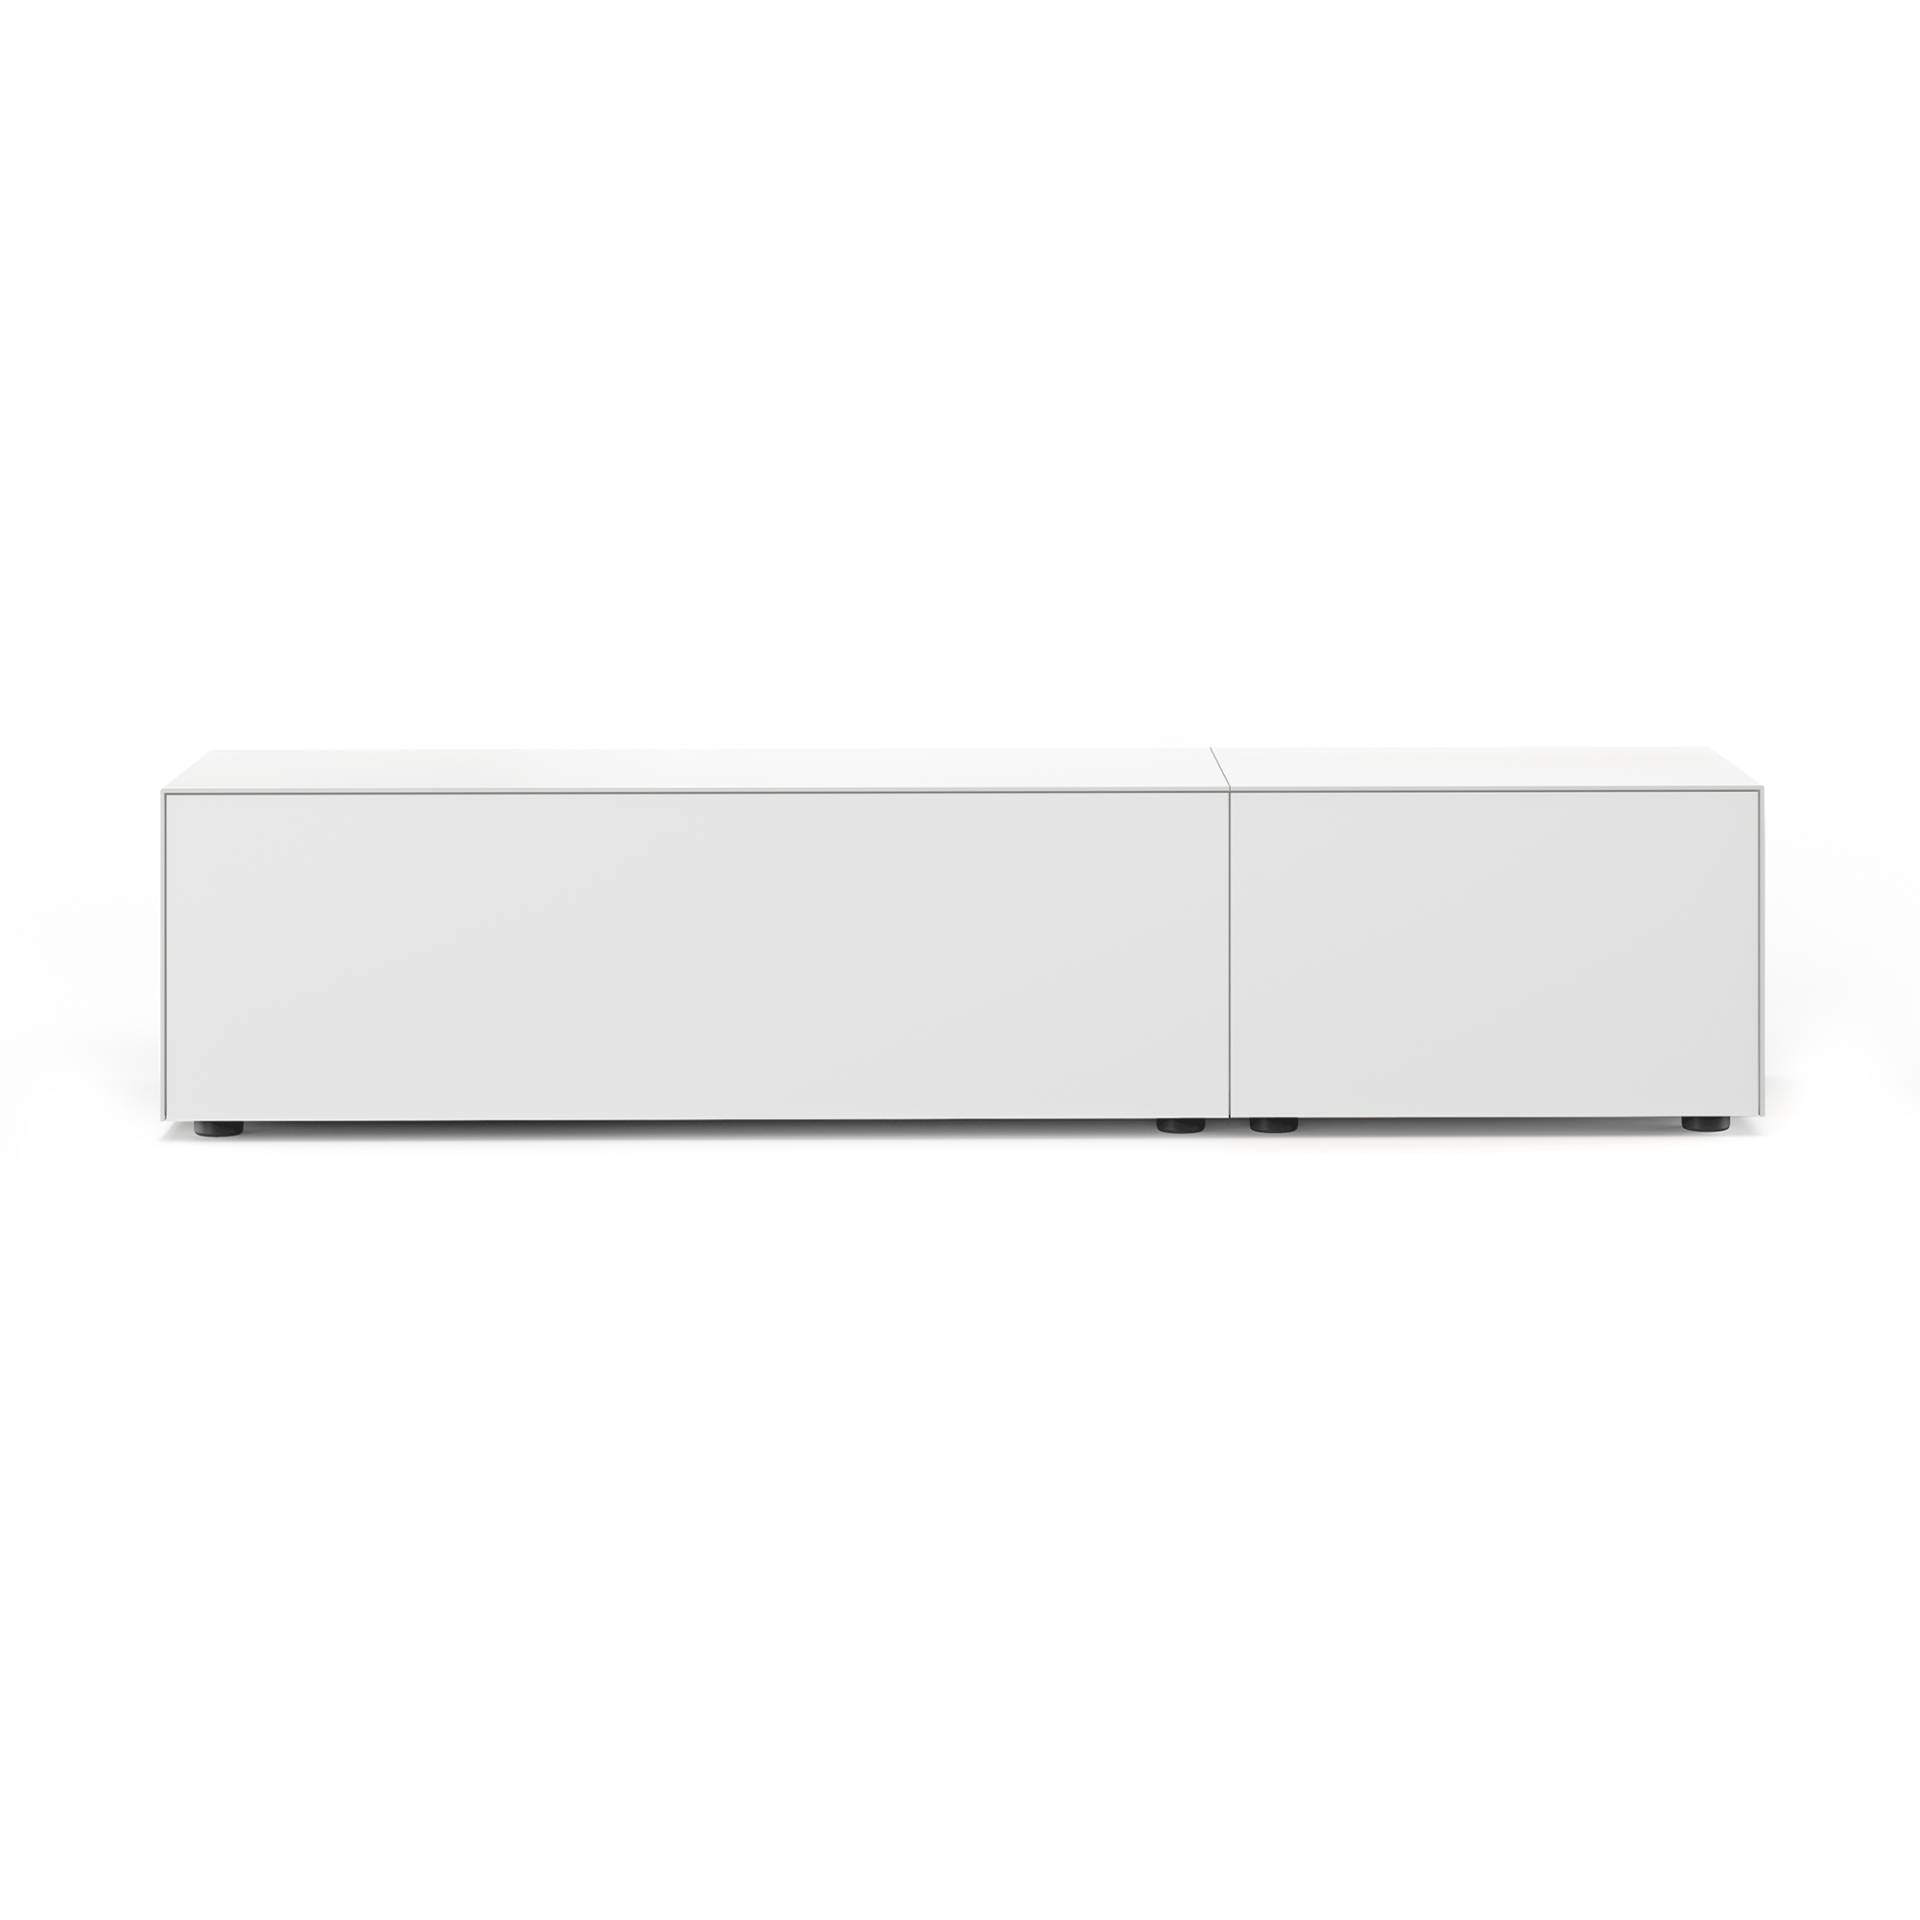 Piure - Edit Q Sideboard 181,3x48x63cm mit 2 Schubkasten - weiß/anthrazit/matt/2 Schubkasten/Gestell Stahl anthrazit von Piure